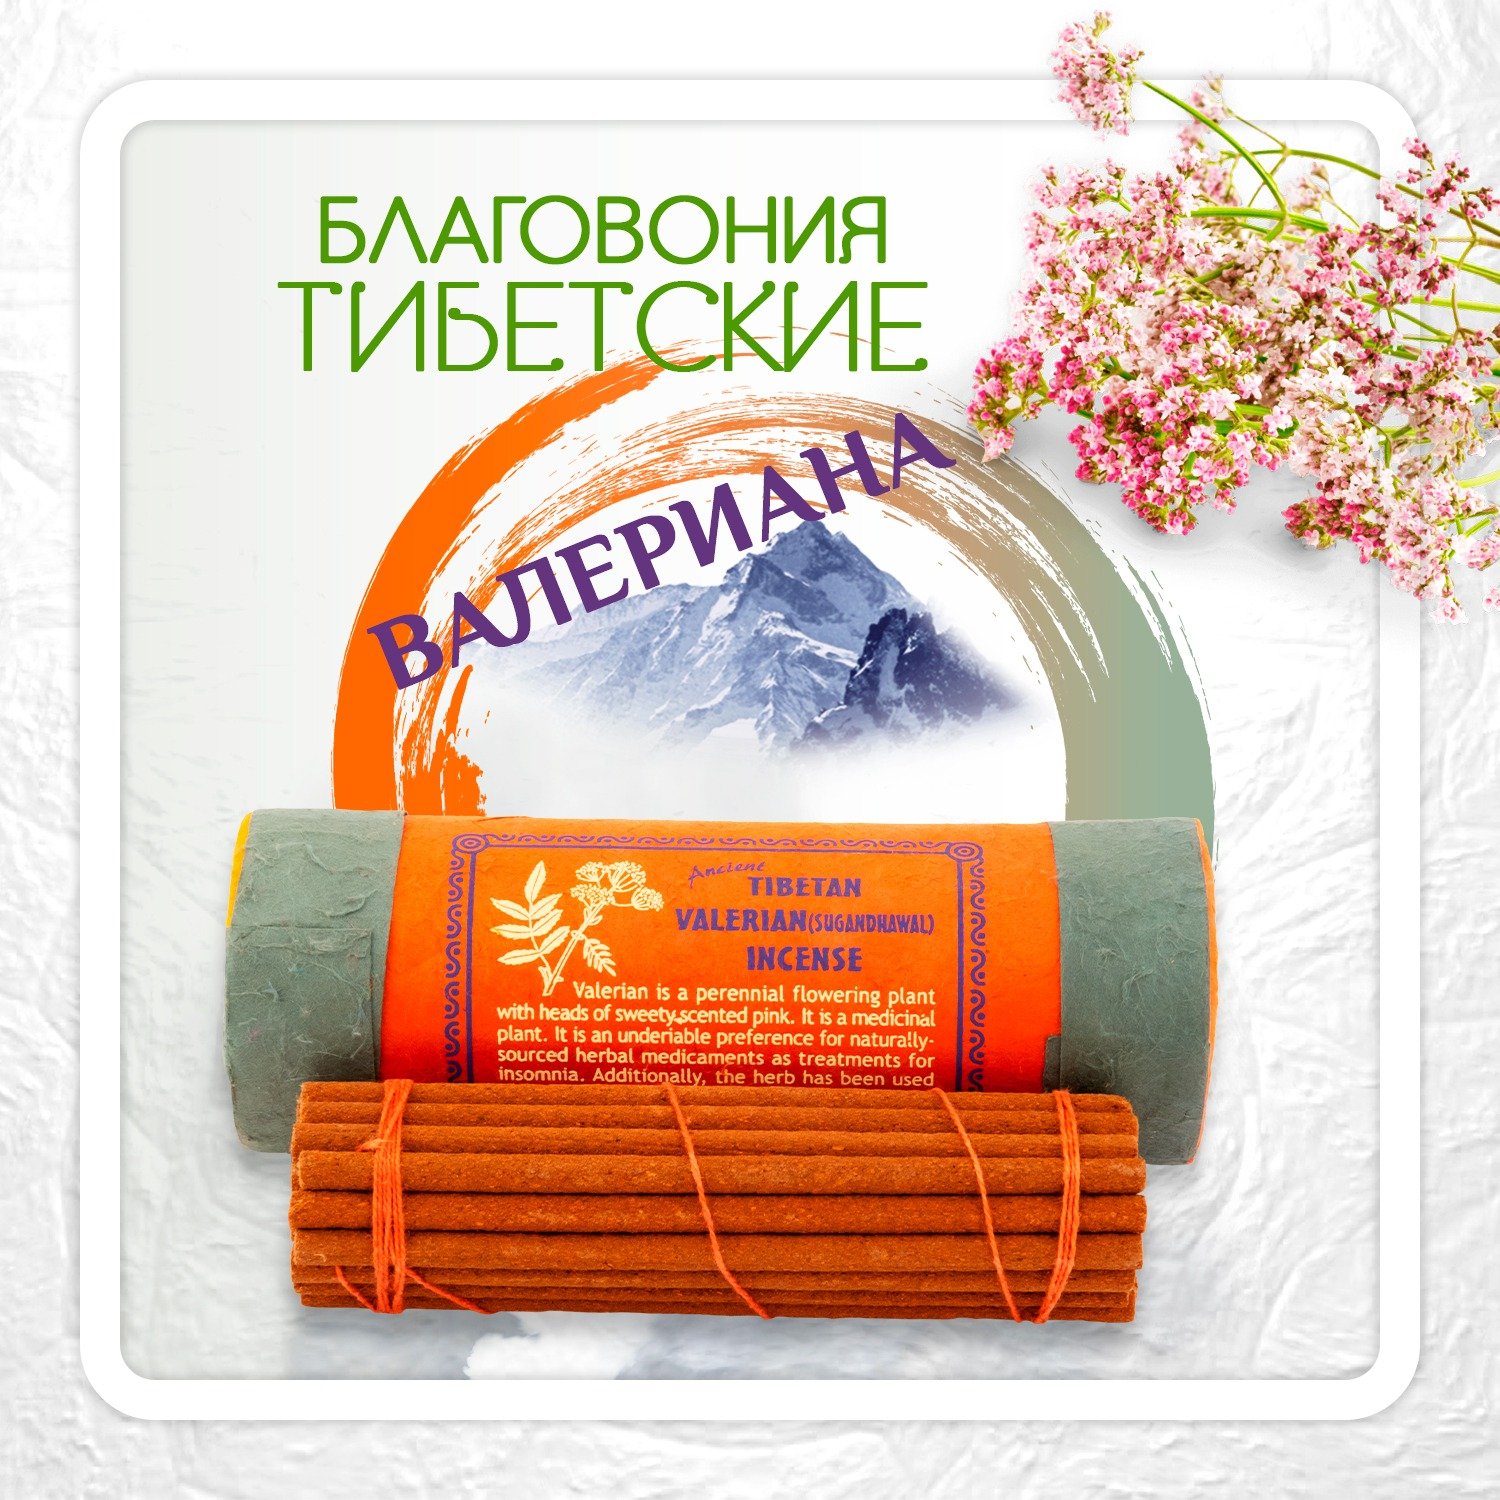 Купить Благовоние Tibetan Valerian Sugandhawal Incense / валериана, 30 палочек по 11 см в интернет-магазине Ариаварта